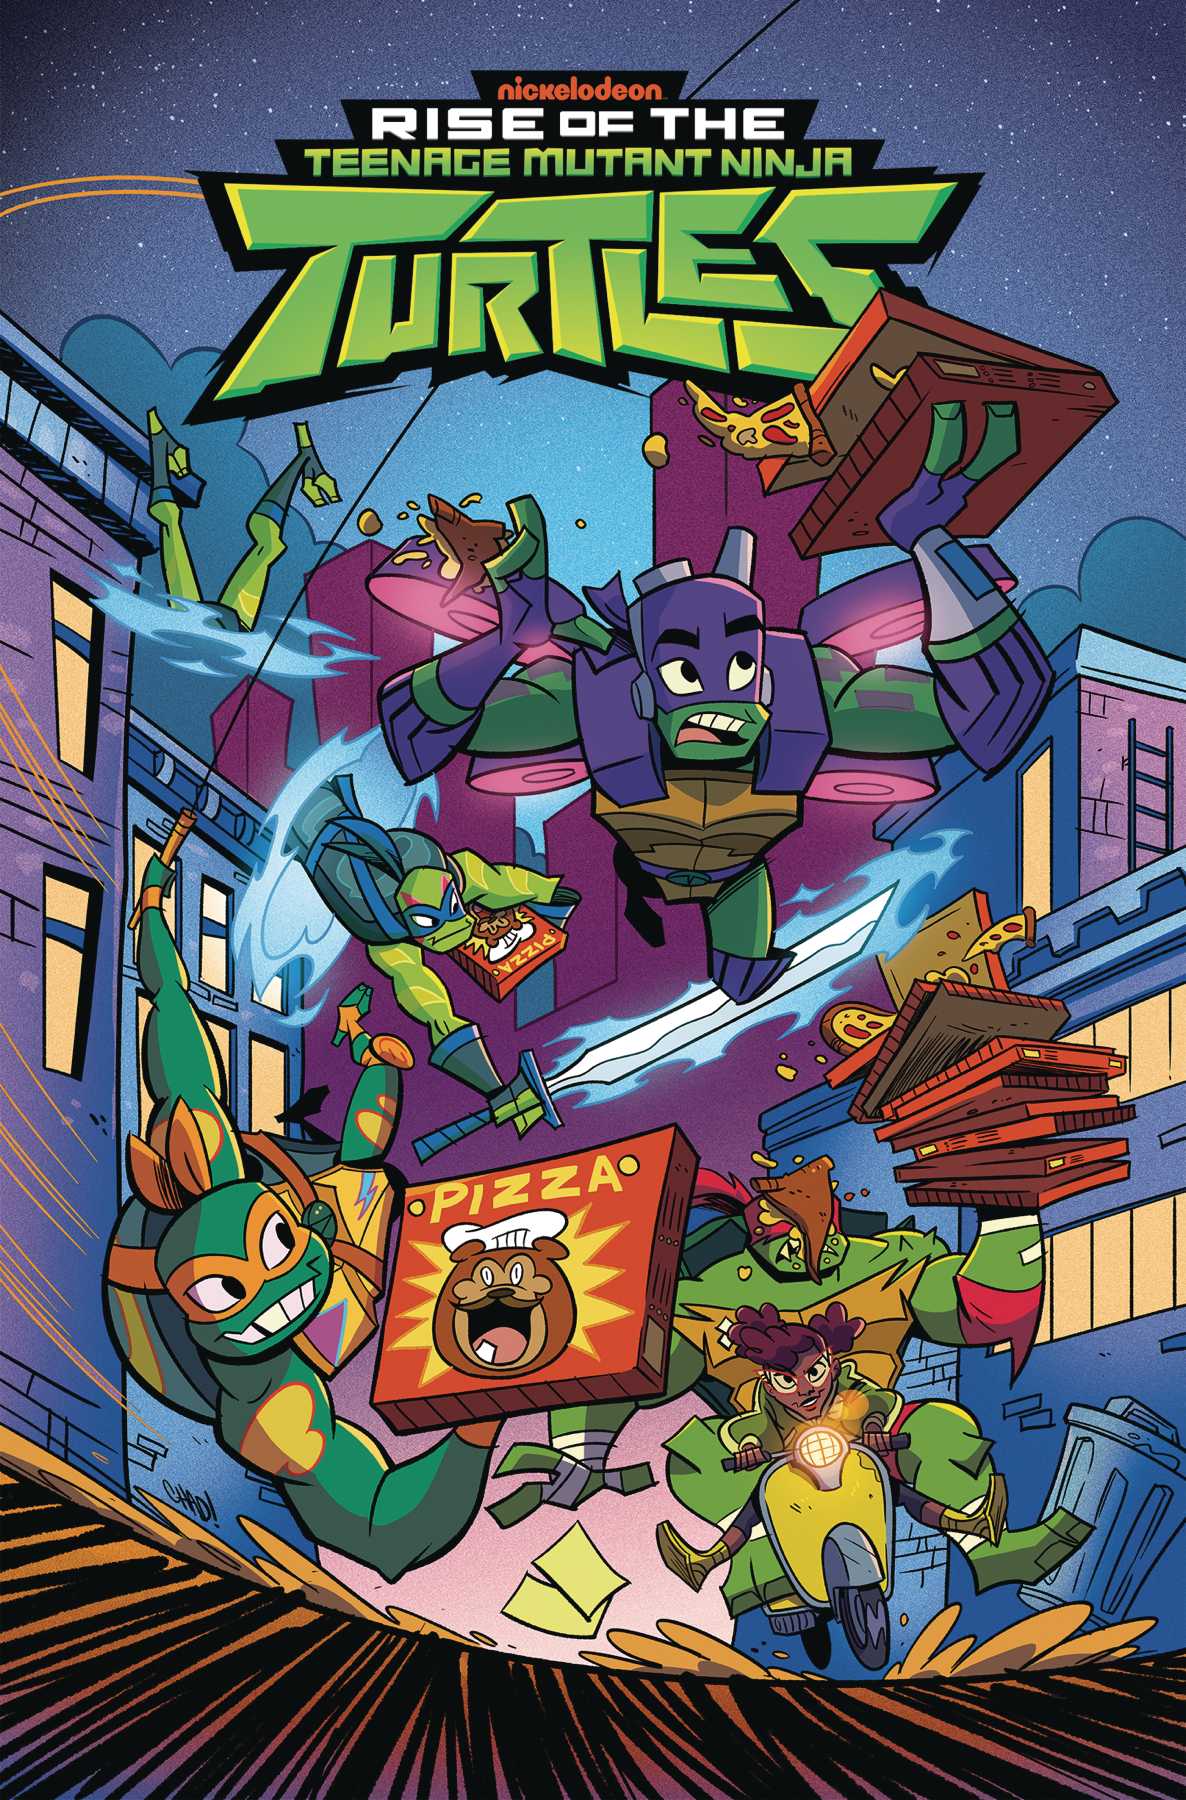 Teenage Mutant Ninja Turtles Rise of the Teenage Mutant Ninja Turtles Graphic Novel Volume 2 Big R